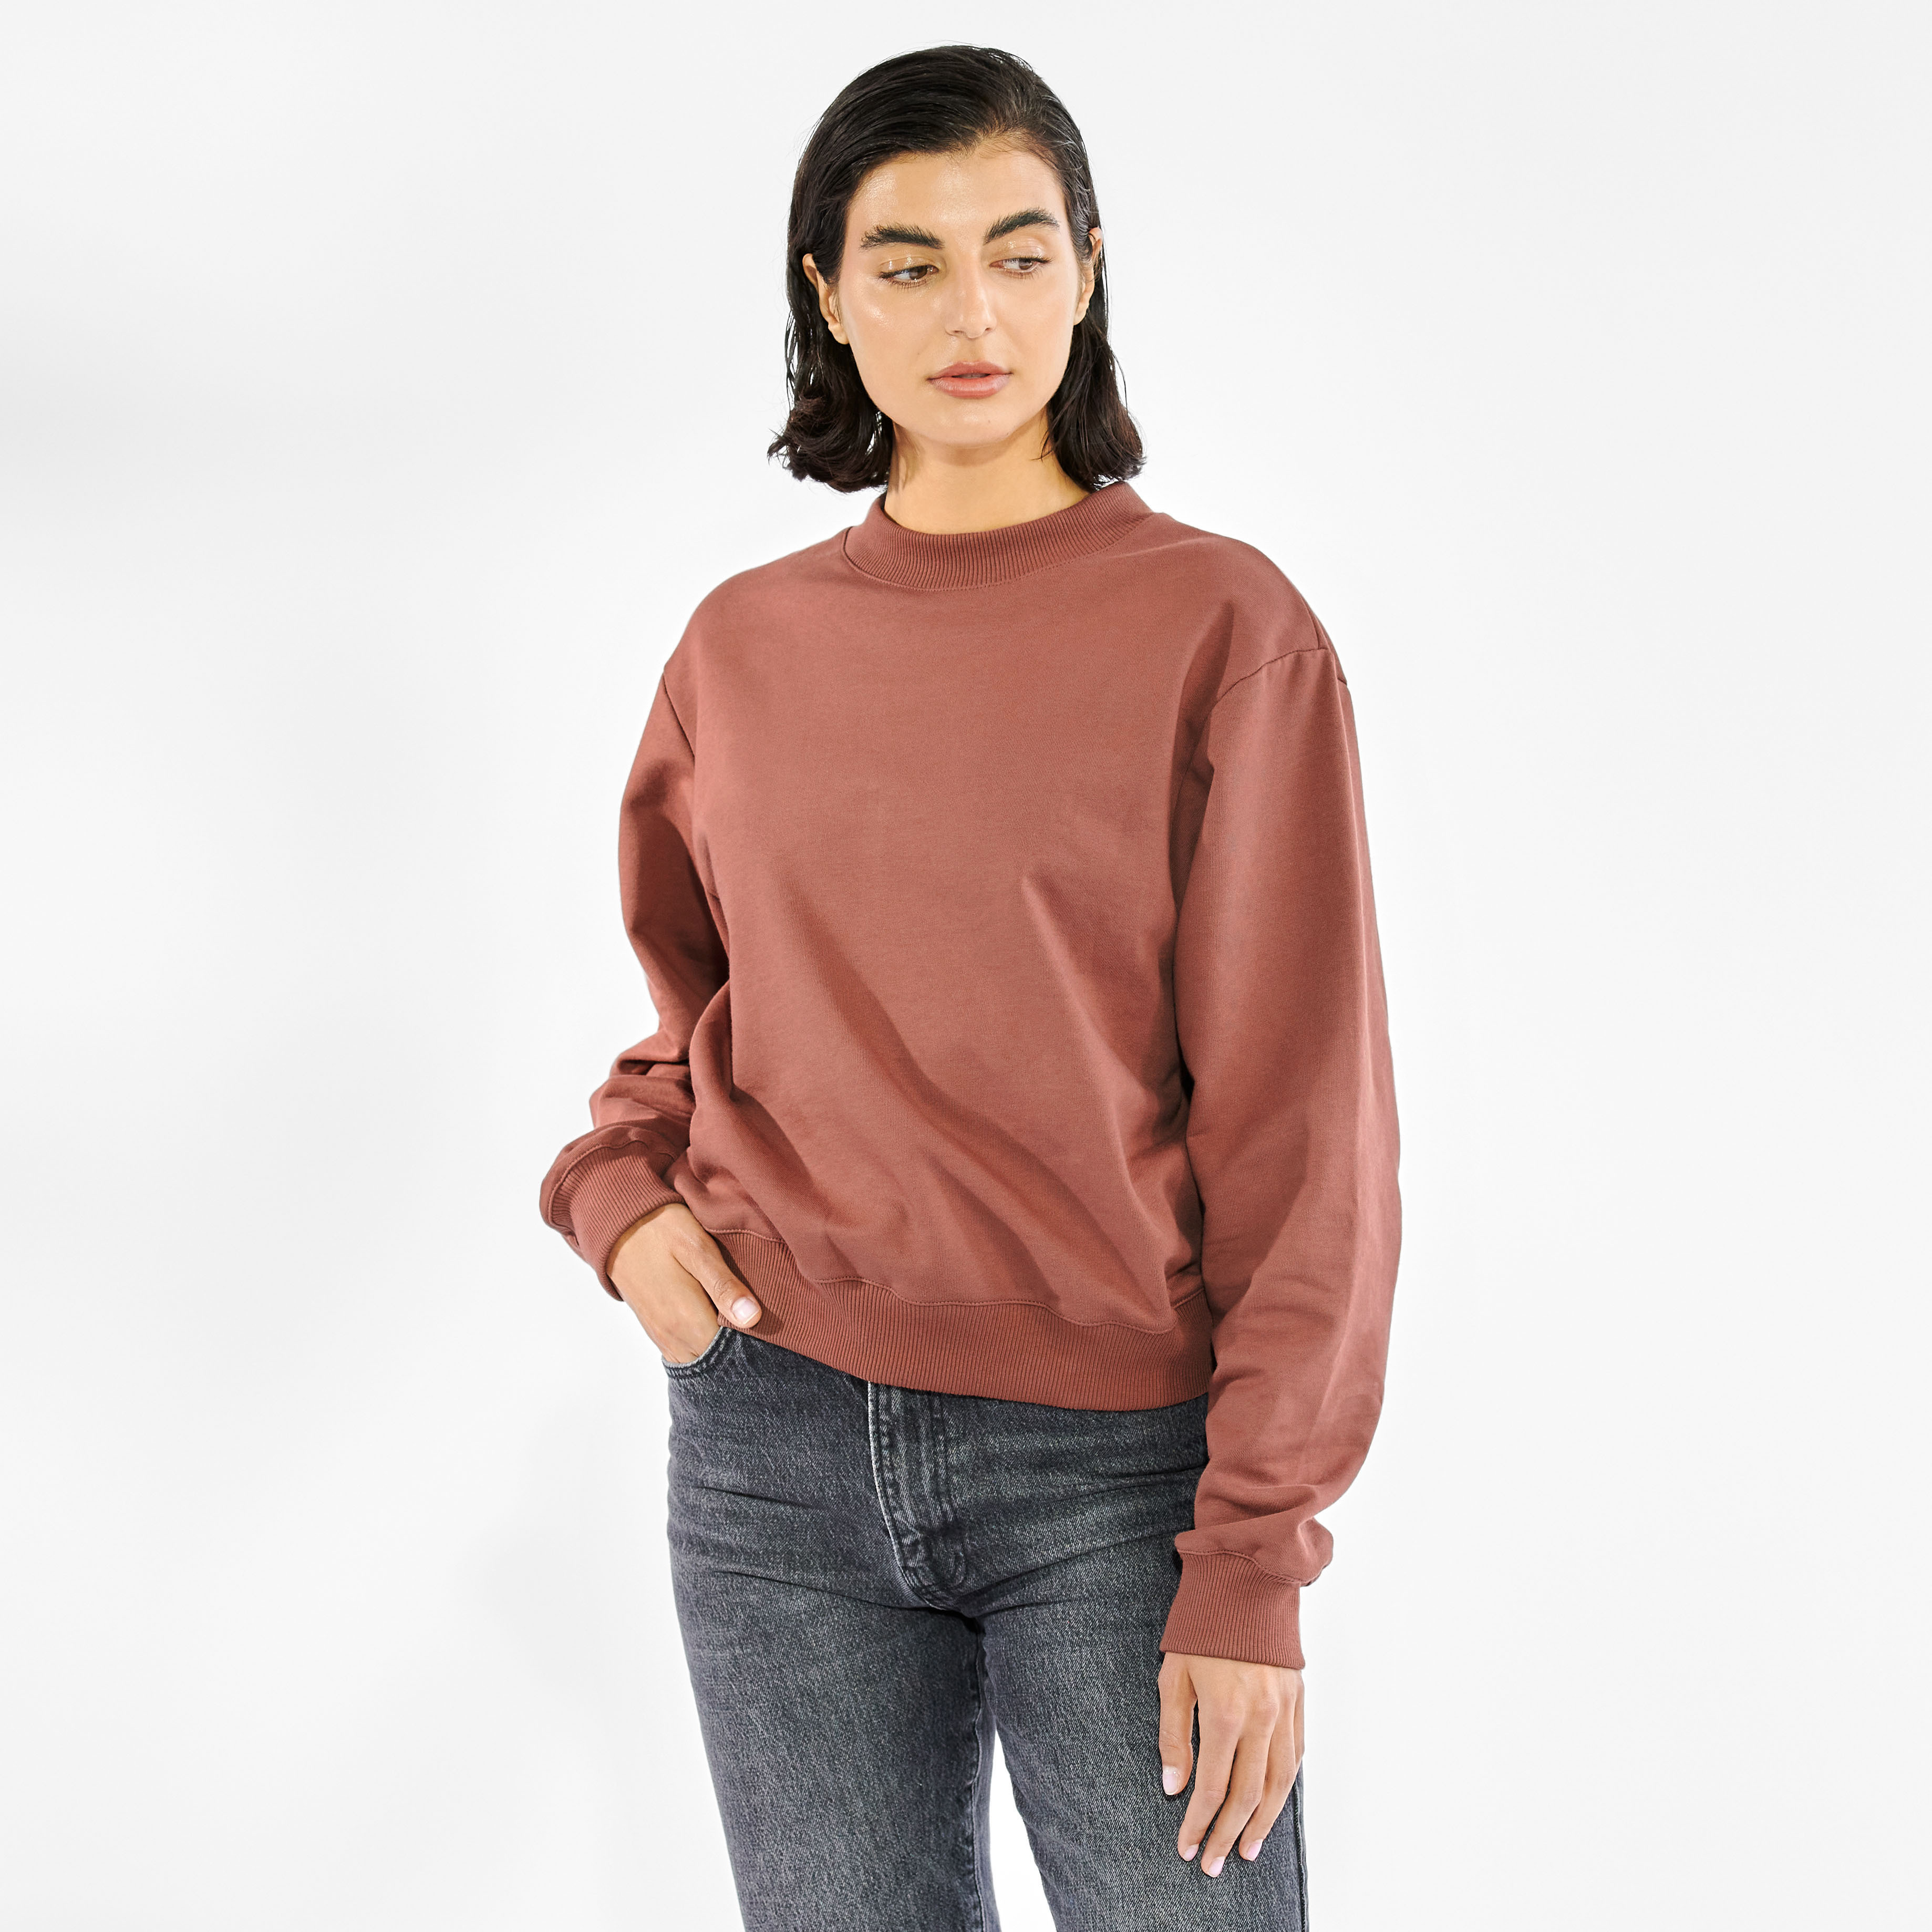 Sweatshirt by Biderman 有機棉精織衛衣 - 咖褐